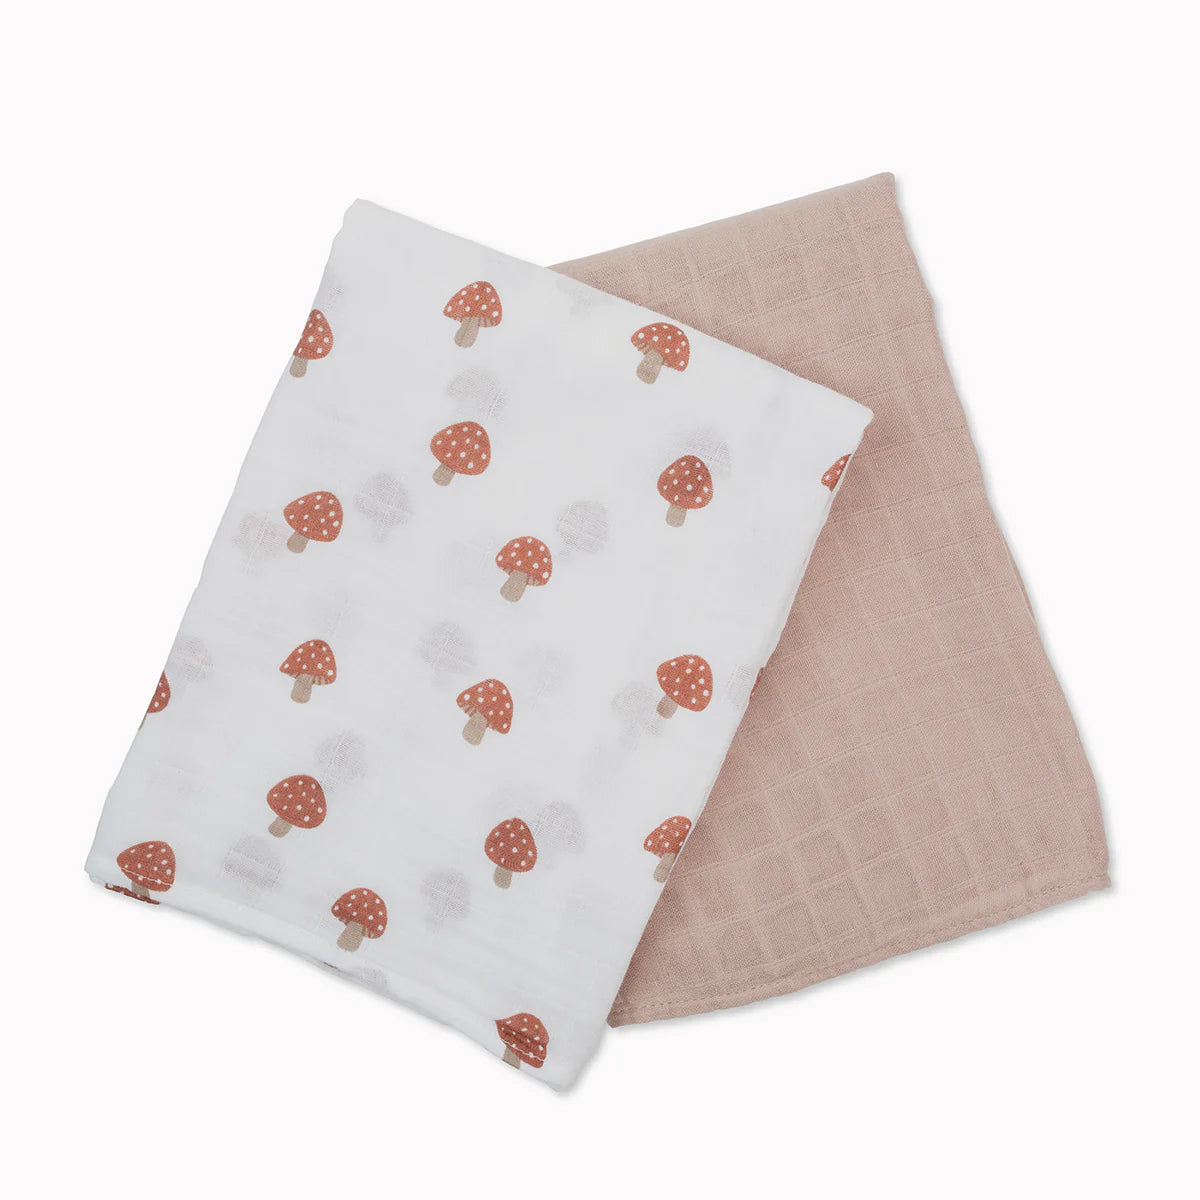 Cotton Muslin Blankets, Pack of 2 - Mushrooms/Beige